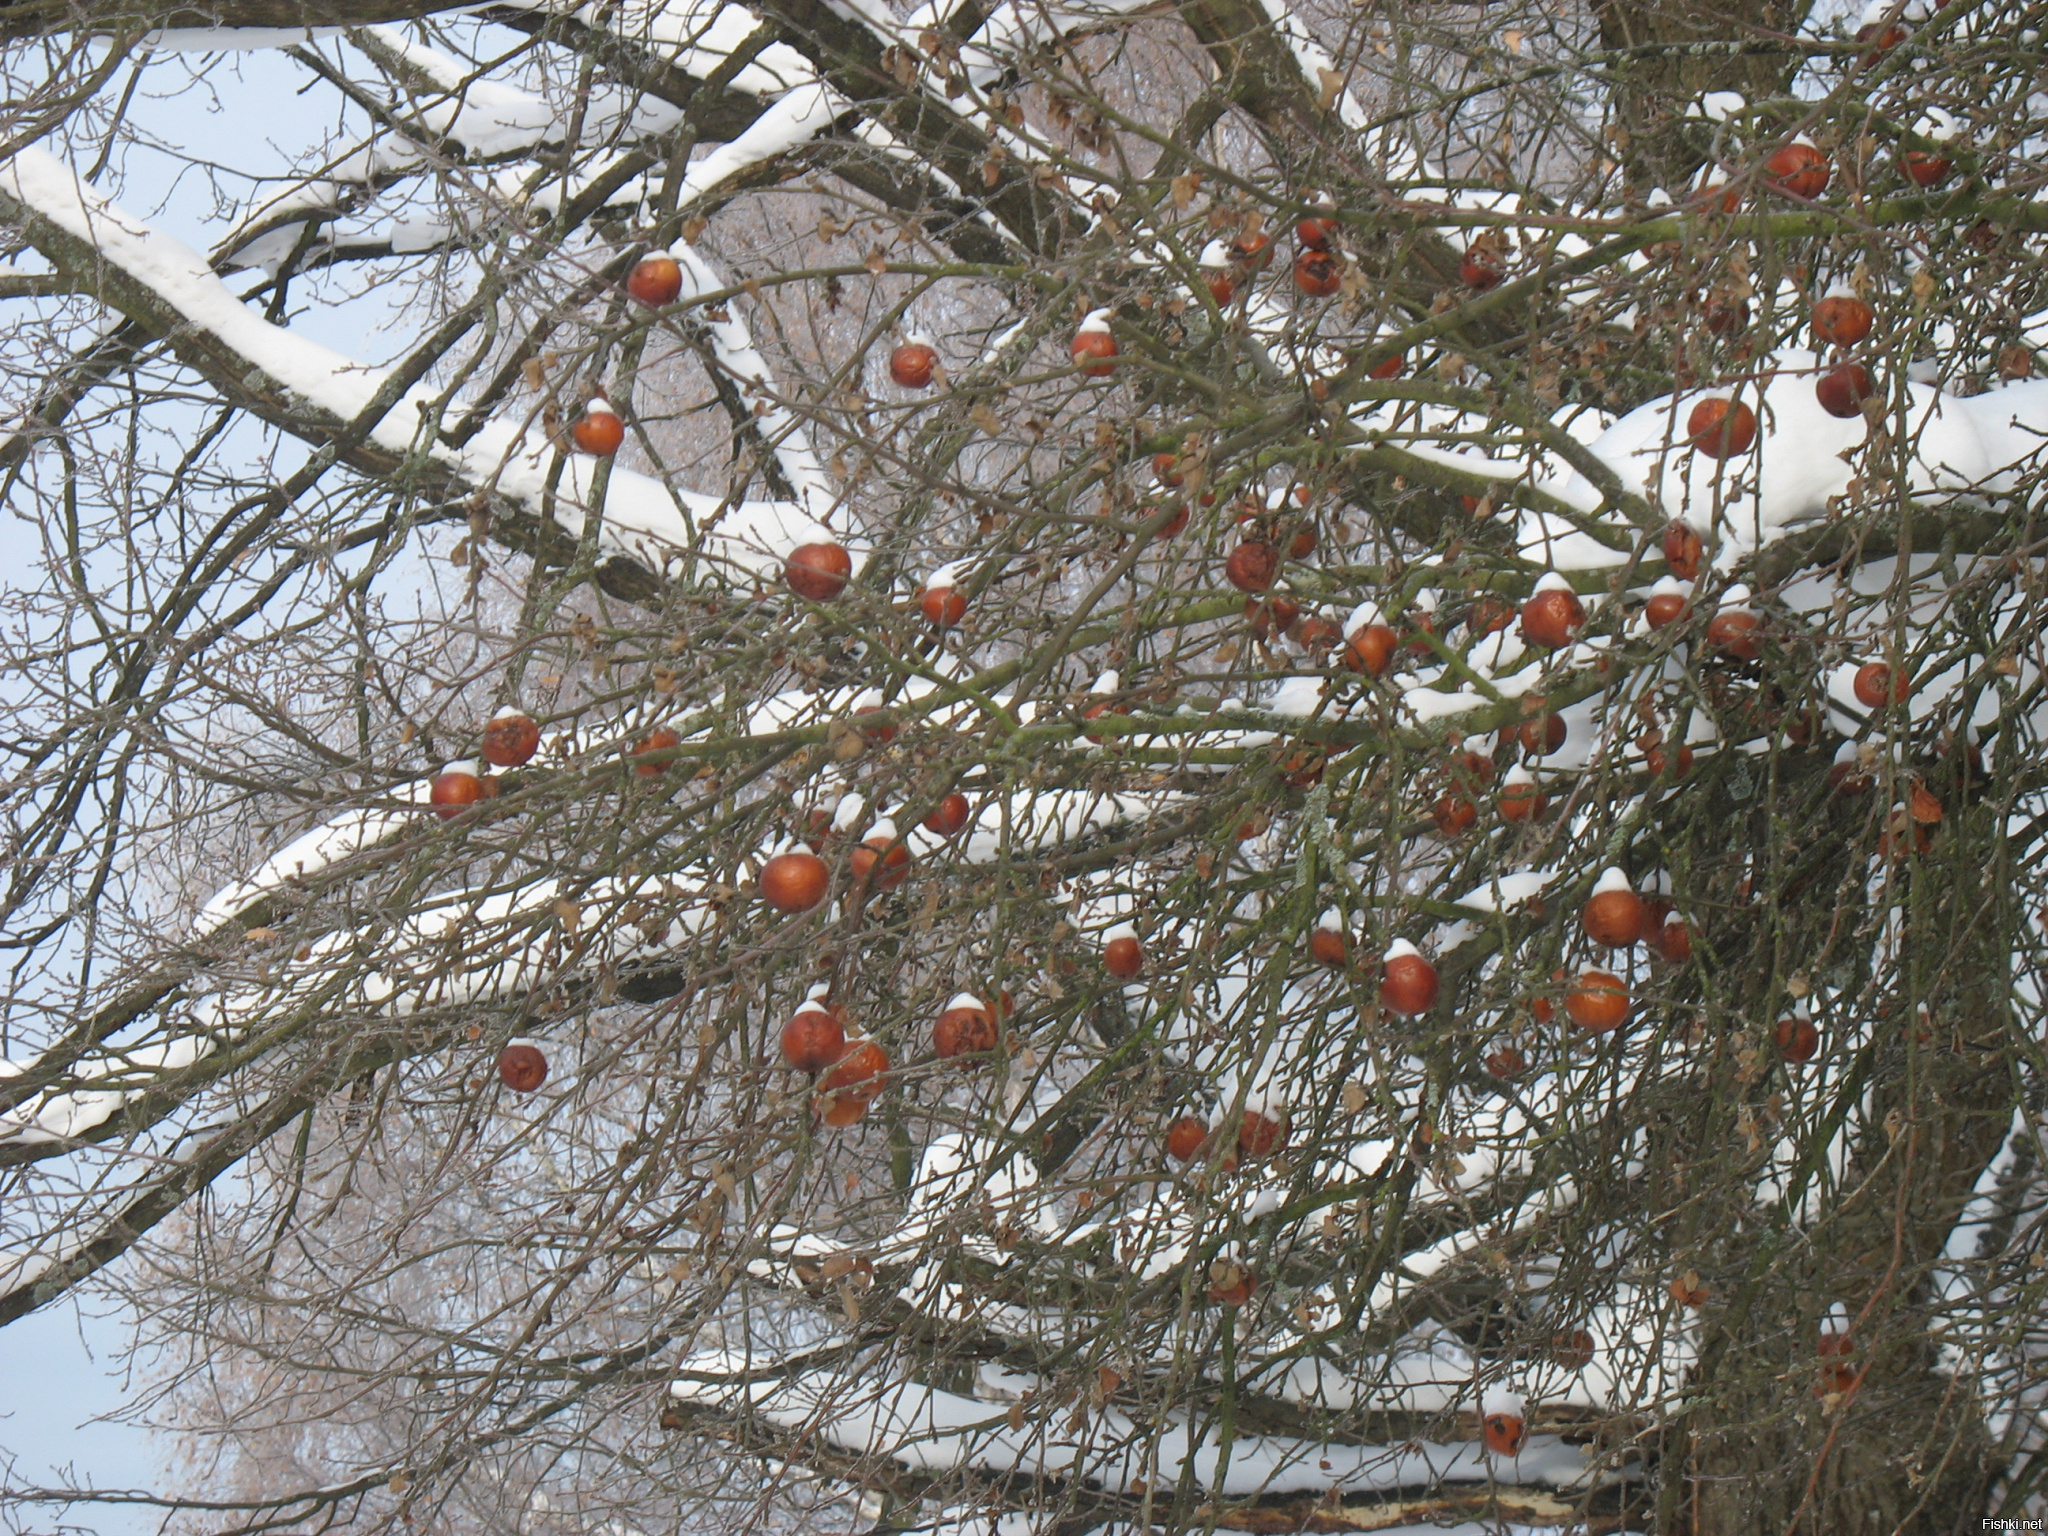 Яблоки на снегу